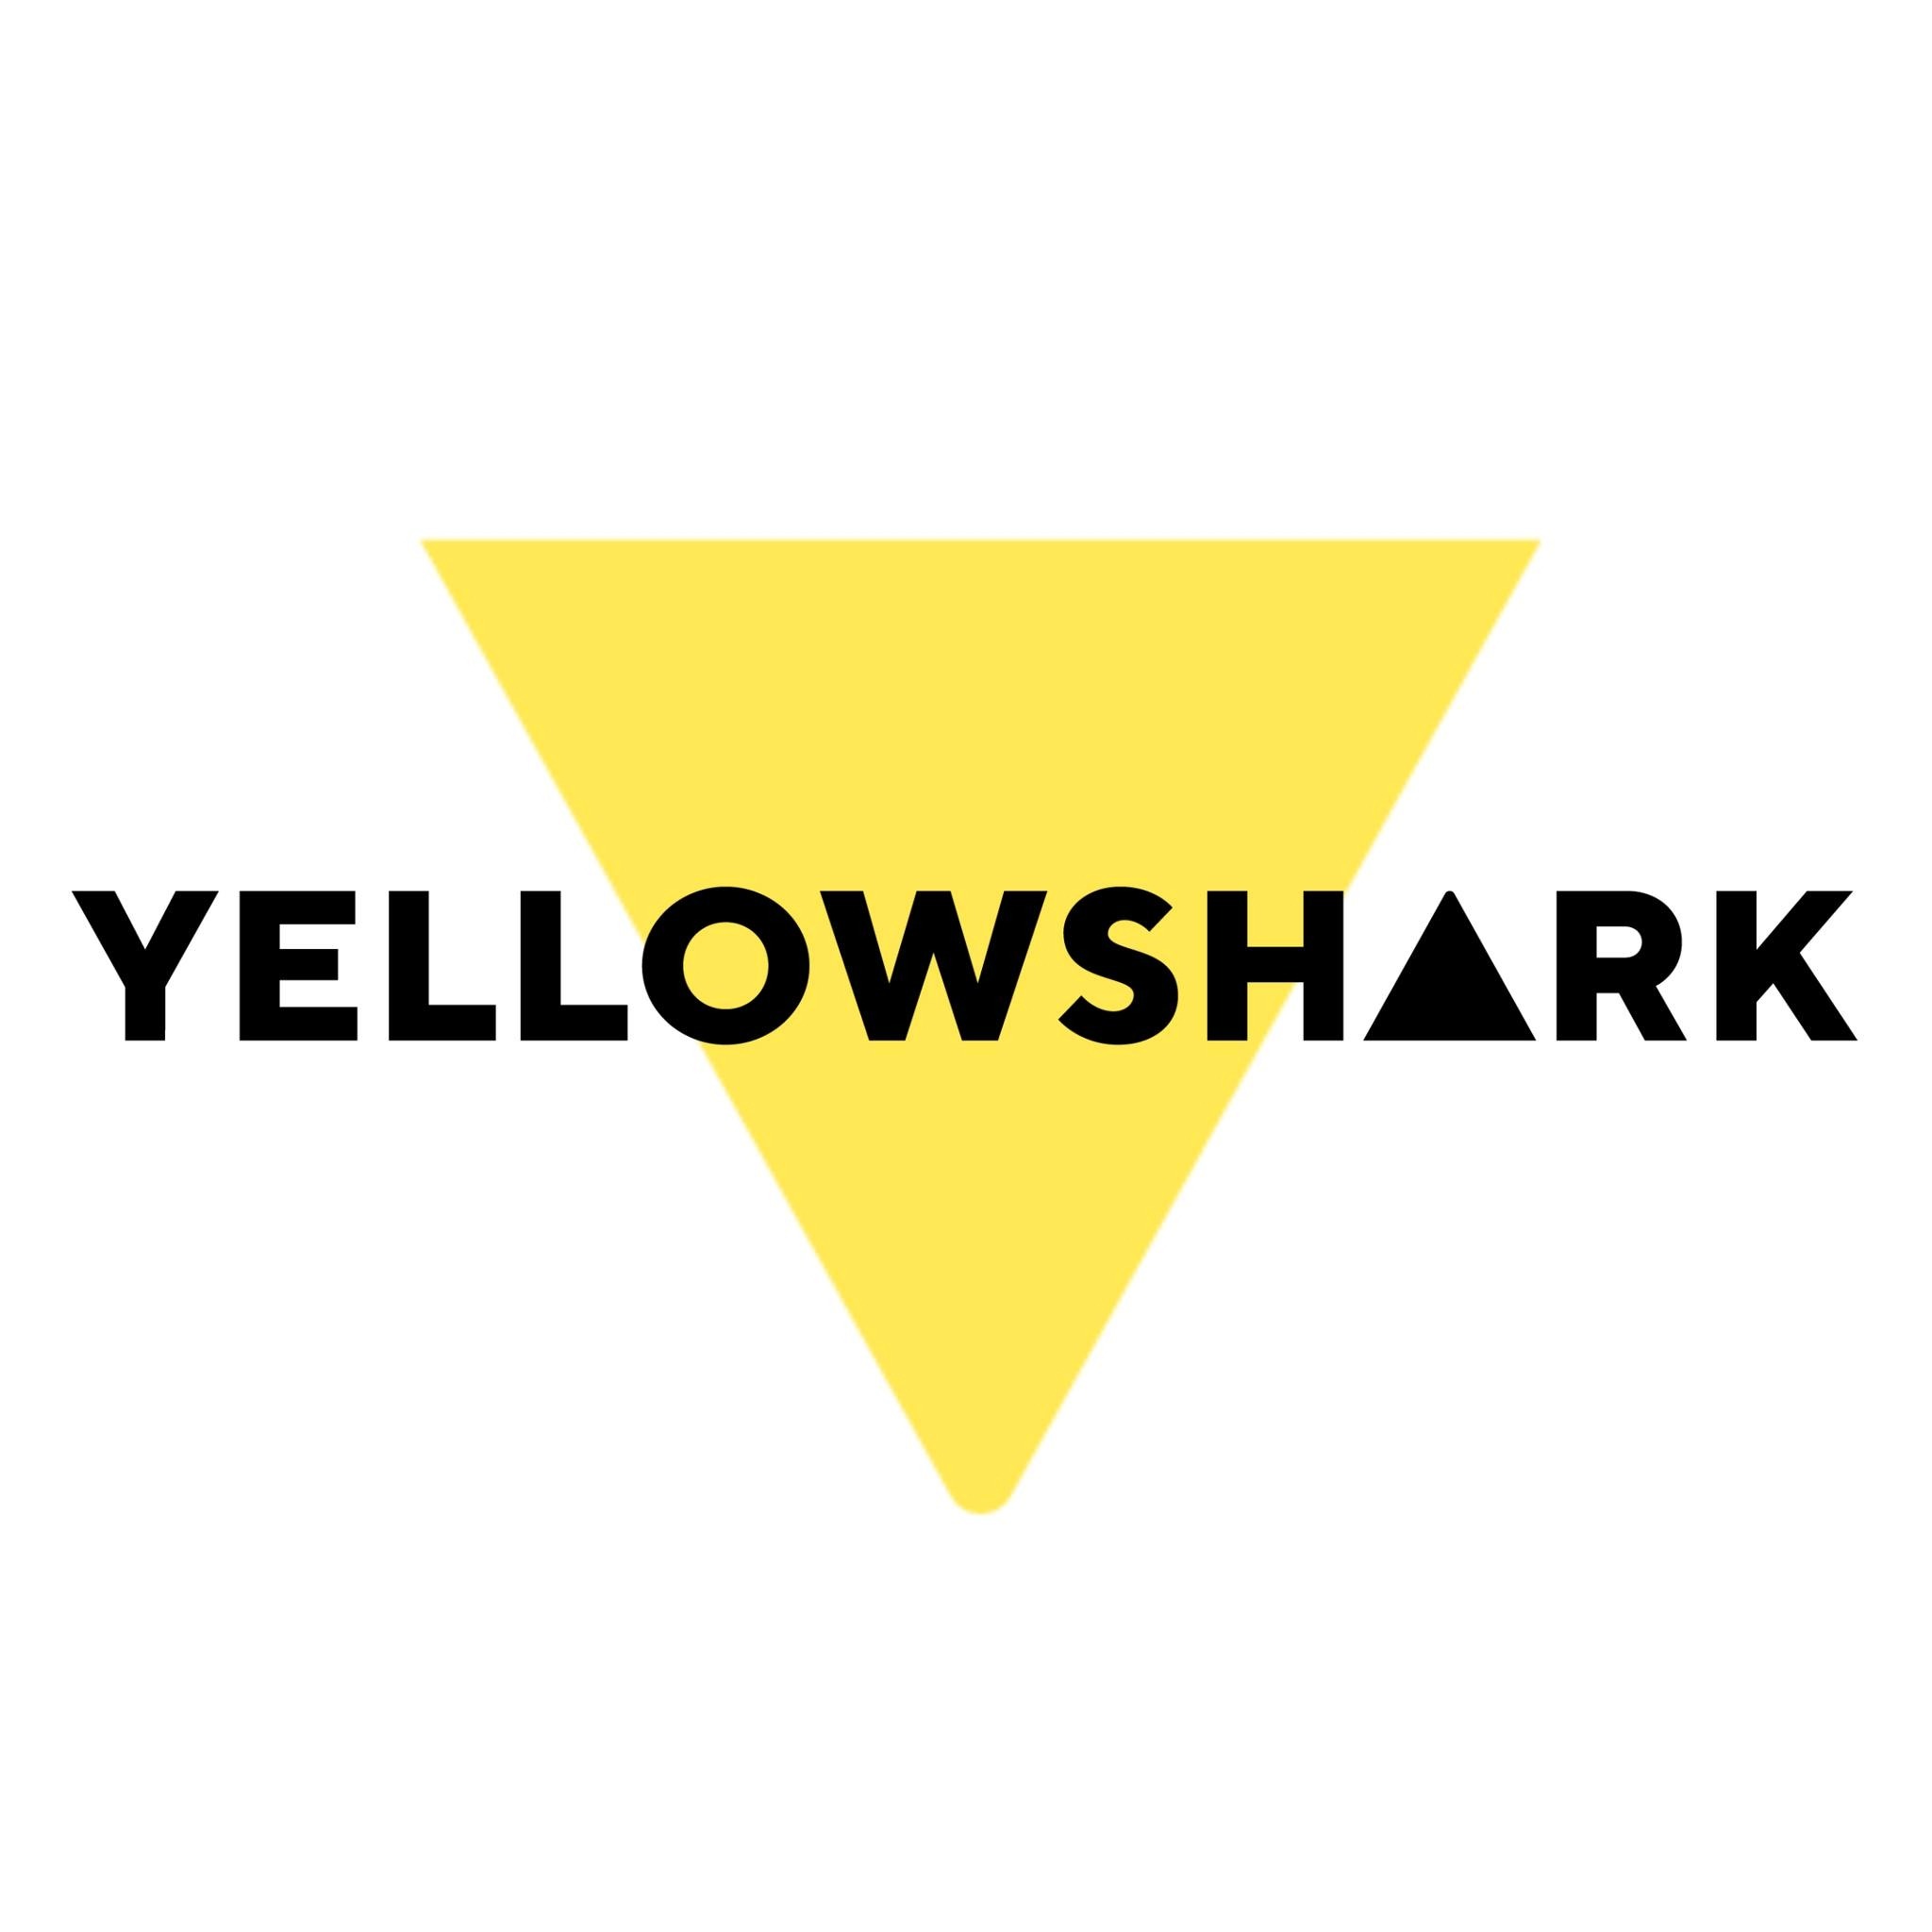 Yellowshark